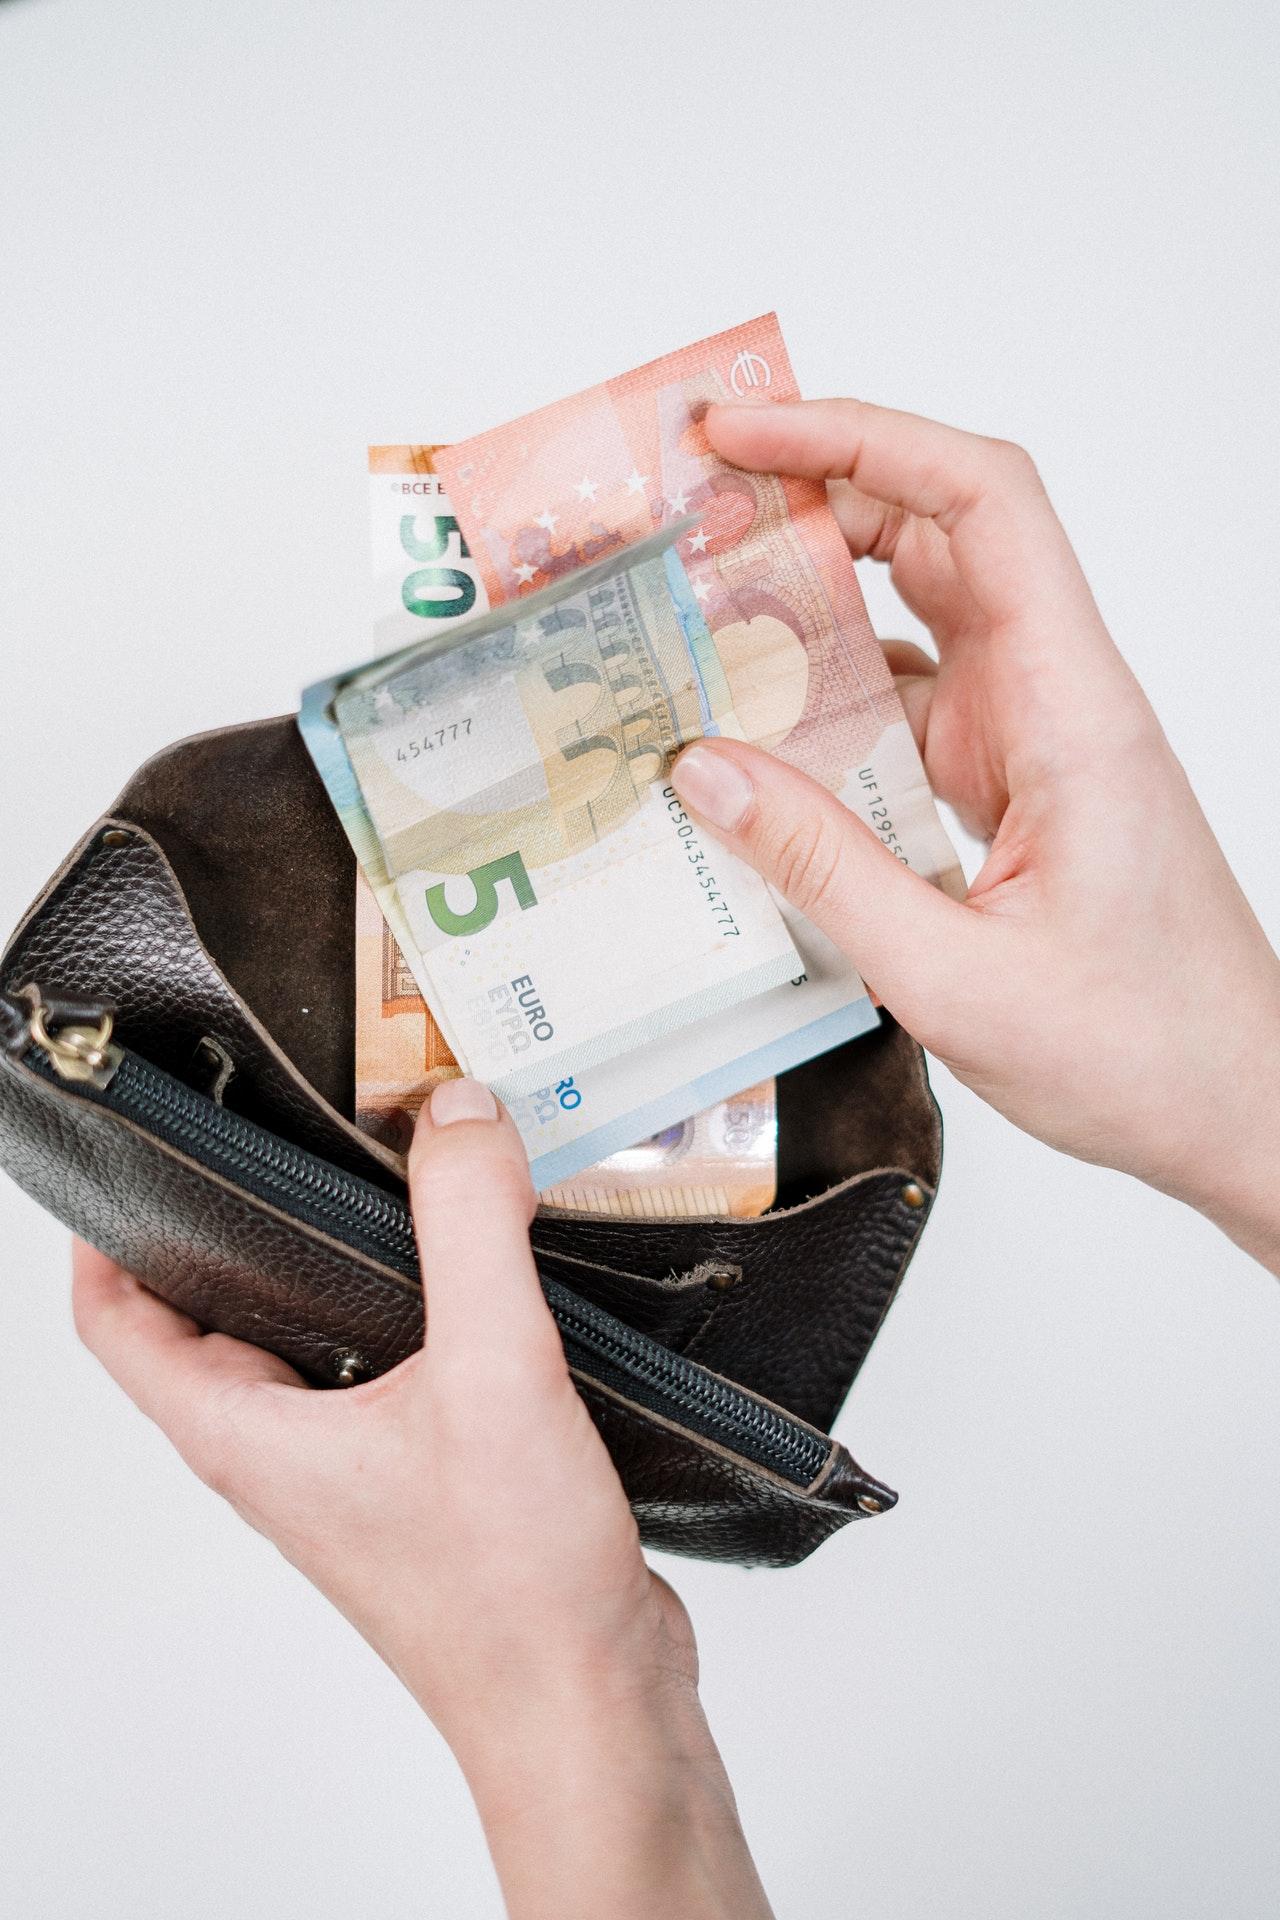 Foto van een hand die briefjes geld uit een portefeuille haalt